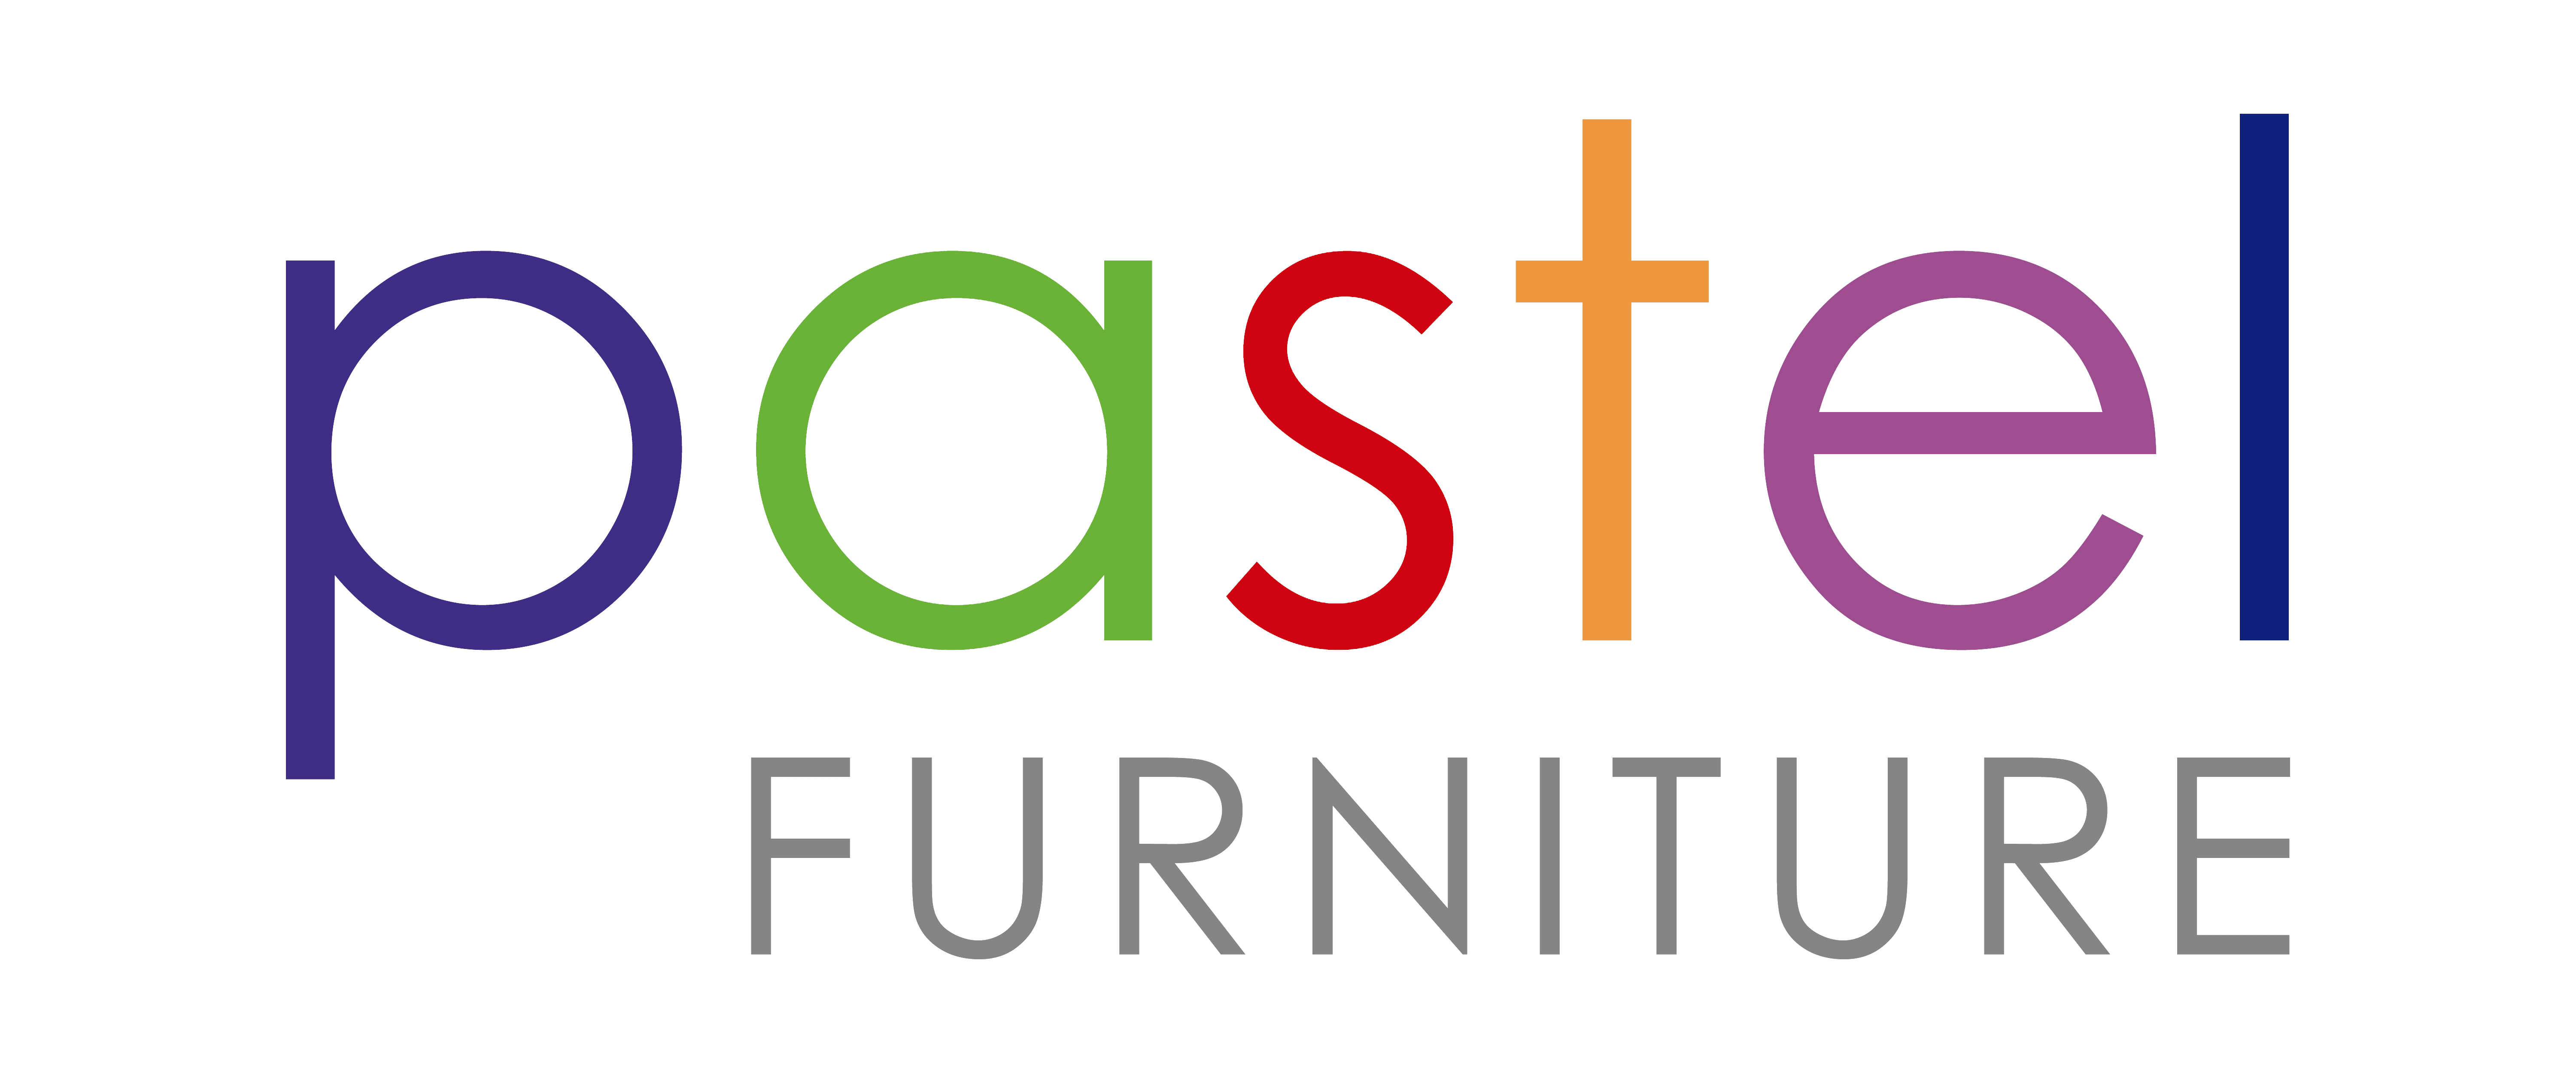 Pastel Furniture Logo - Home